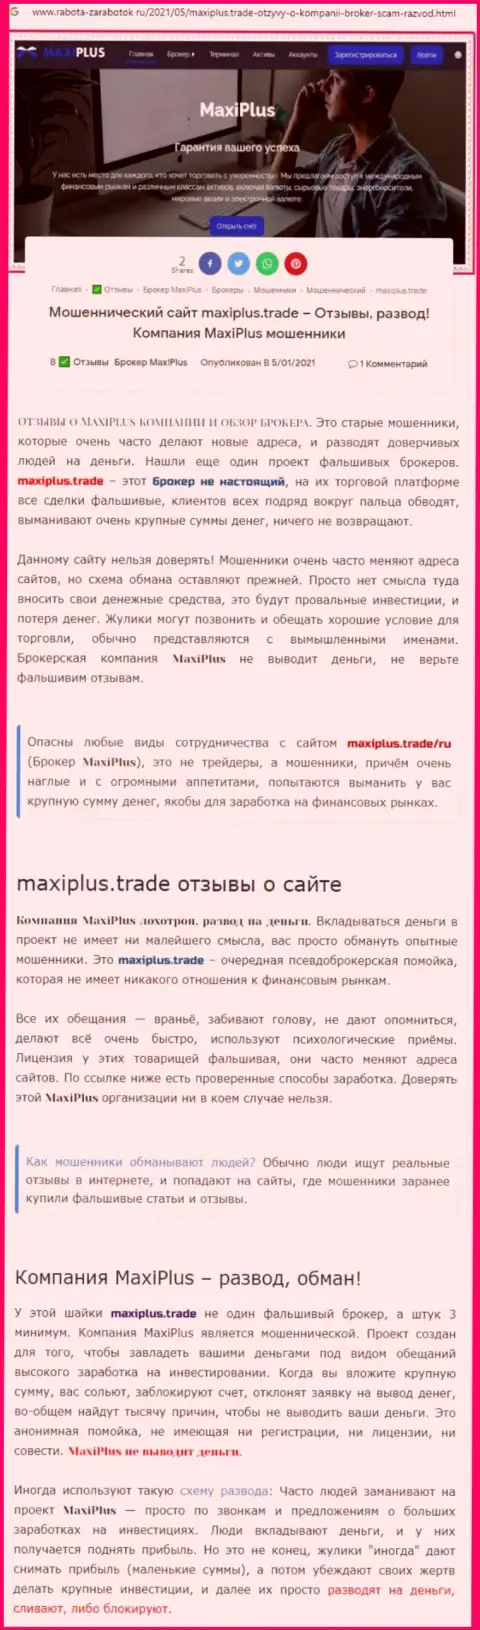 Maxi Plus - это ОБМАНЩИКИ ! Принципы деятельности РАЗВОДНЯКА (обзор)